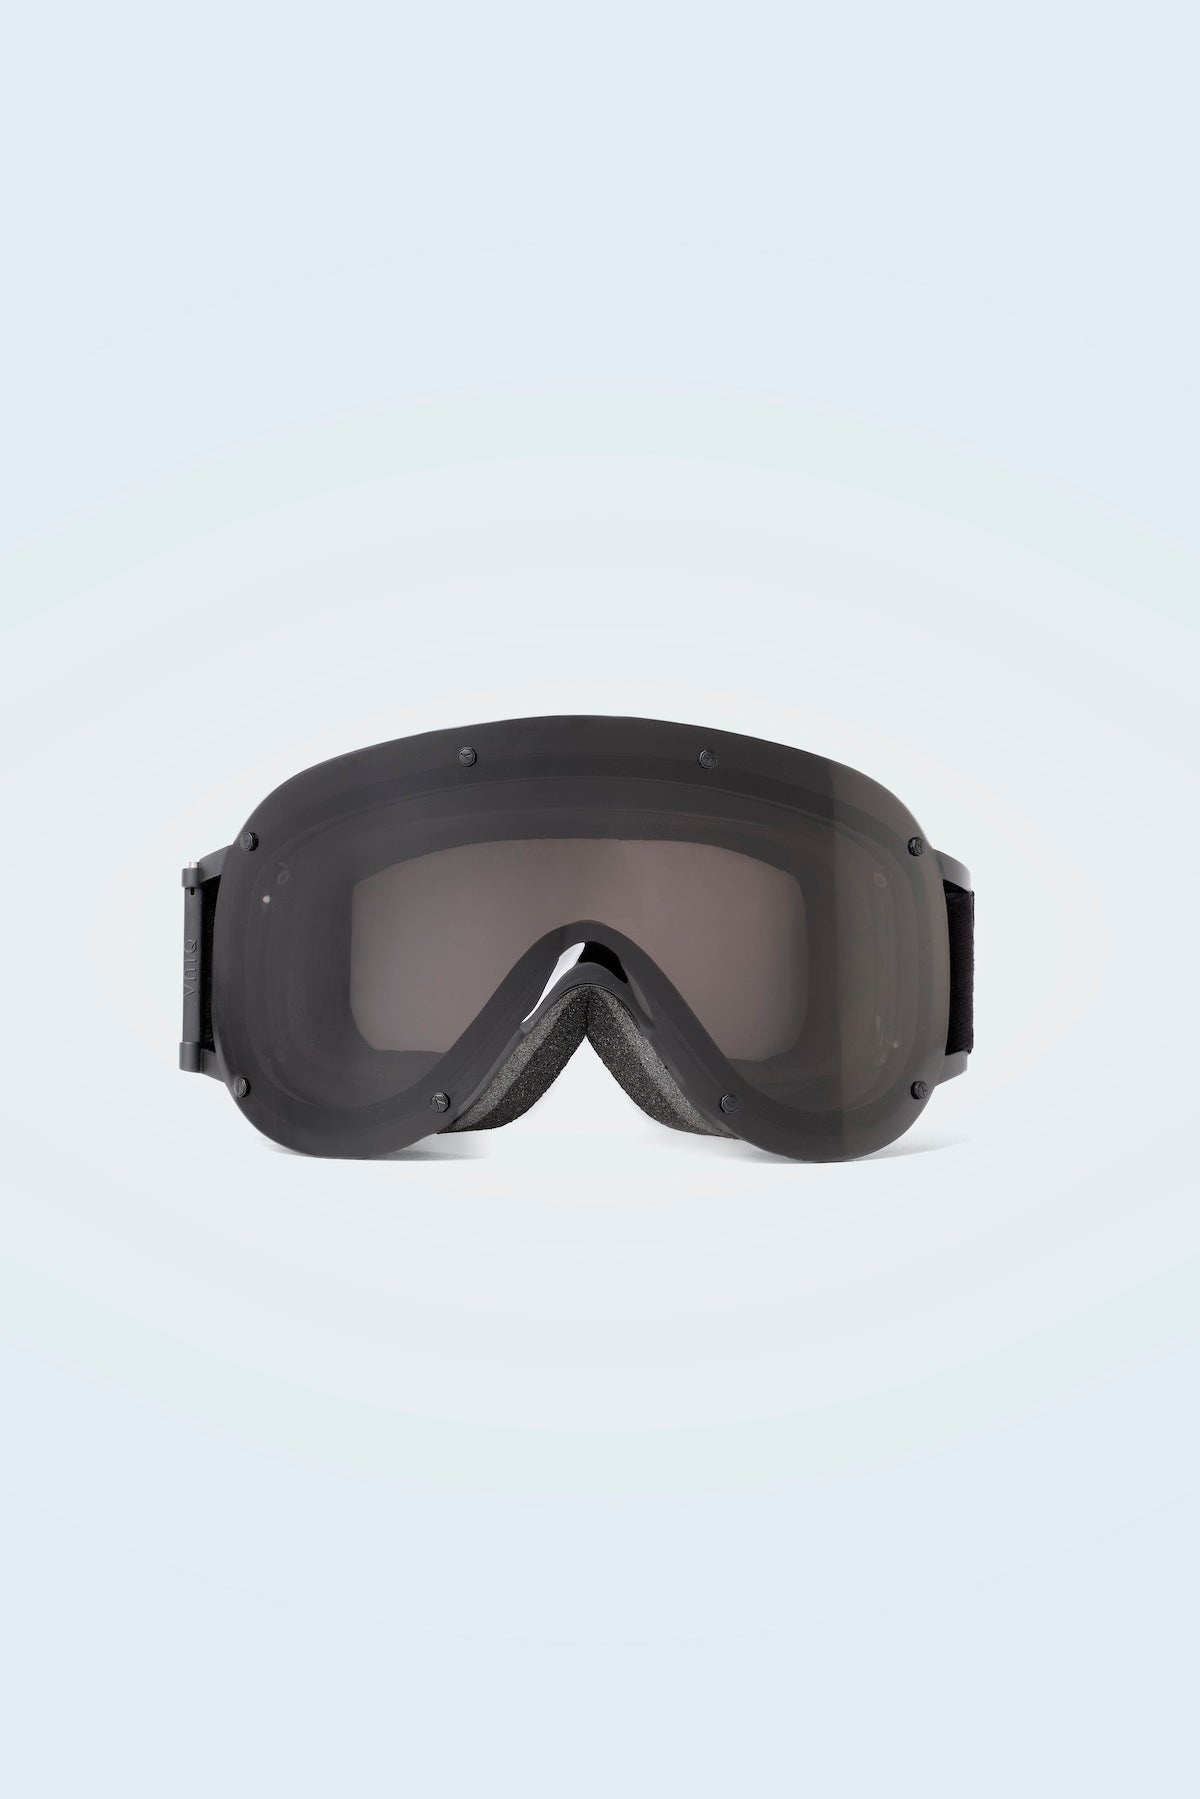 YOUKI Frameless YNIQ Collaboration Ski Goggles - 1